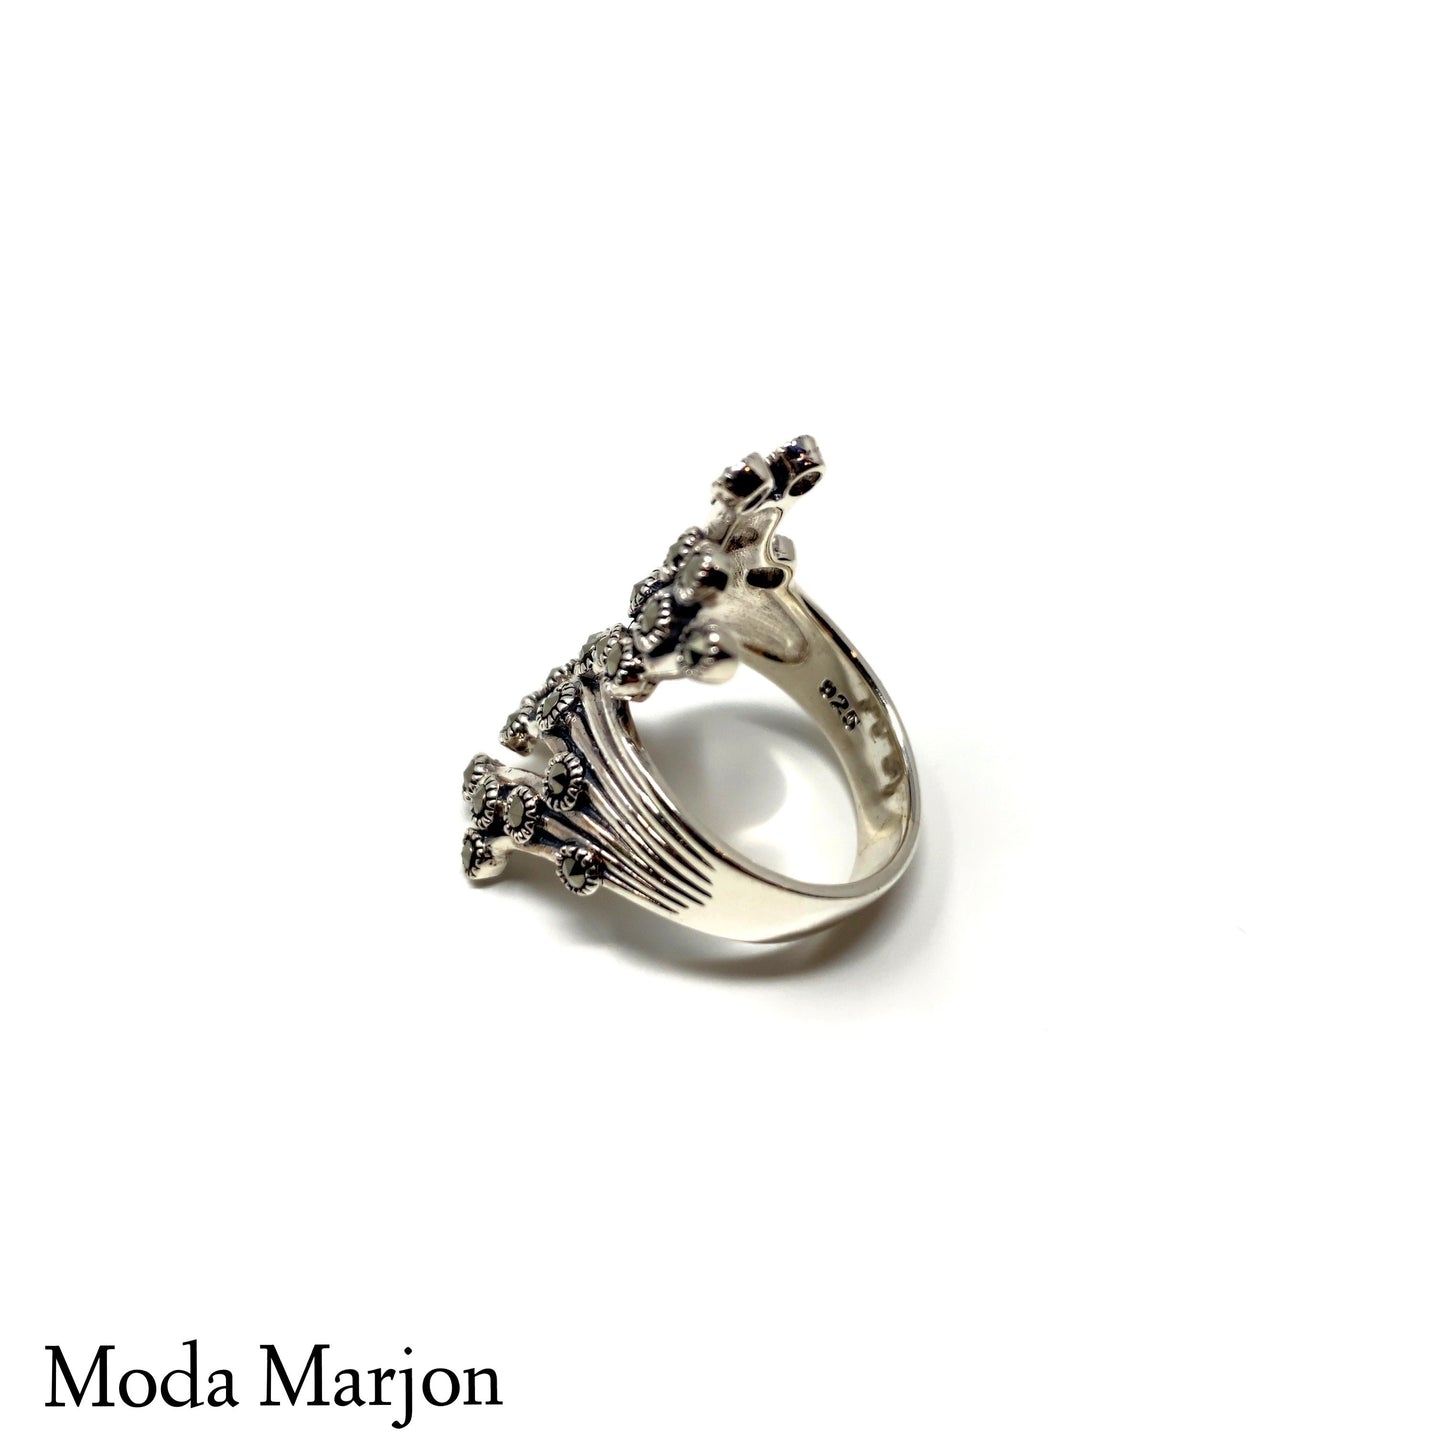 Abstract Marcasite Ring - Moda Marjon 